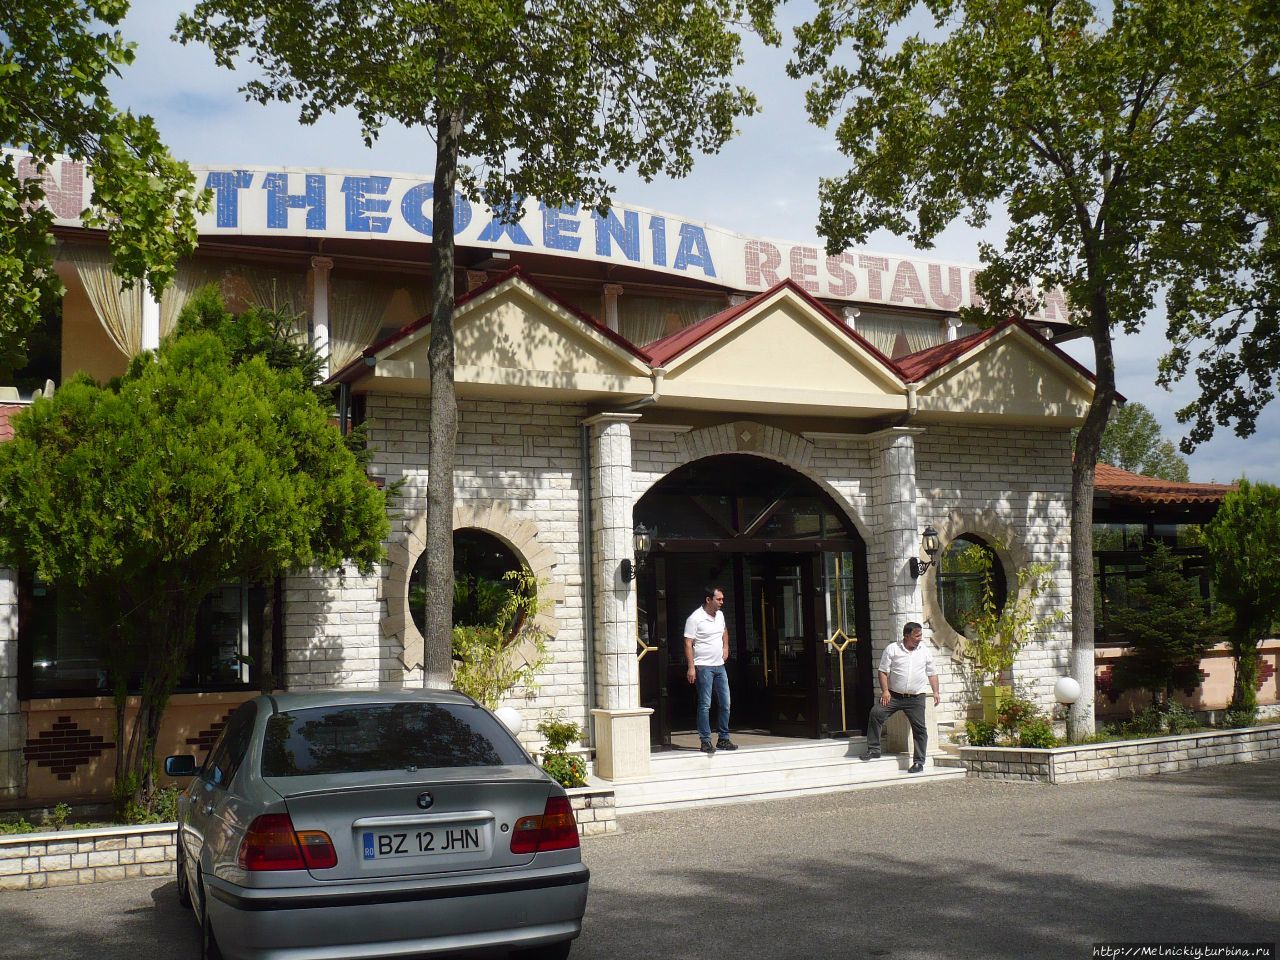 Ресторан Theoxenia / Restaurant Theoxenia